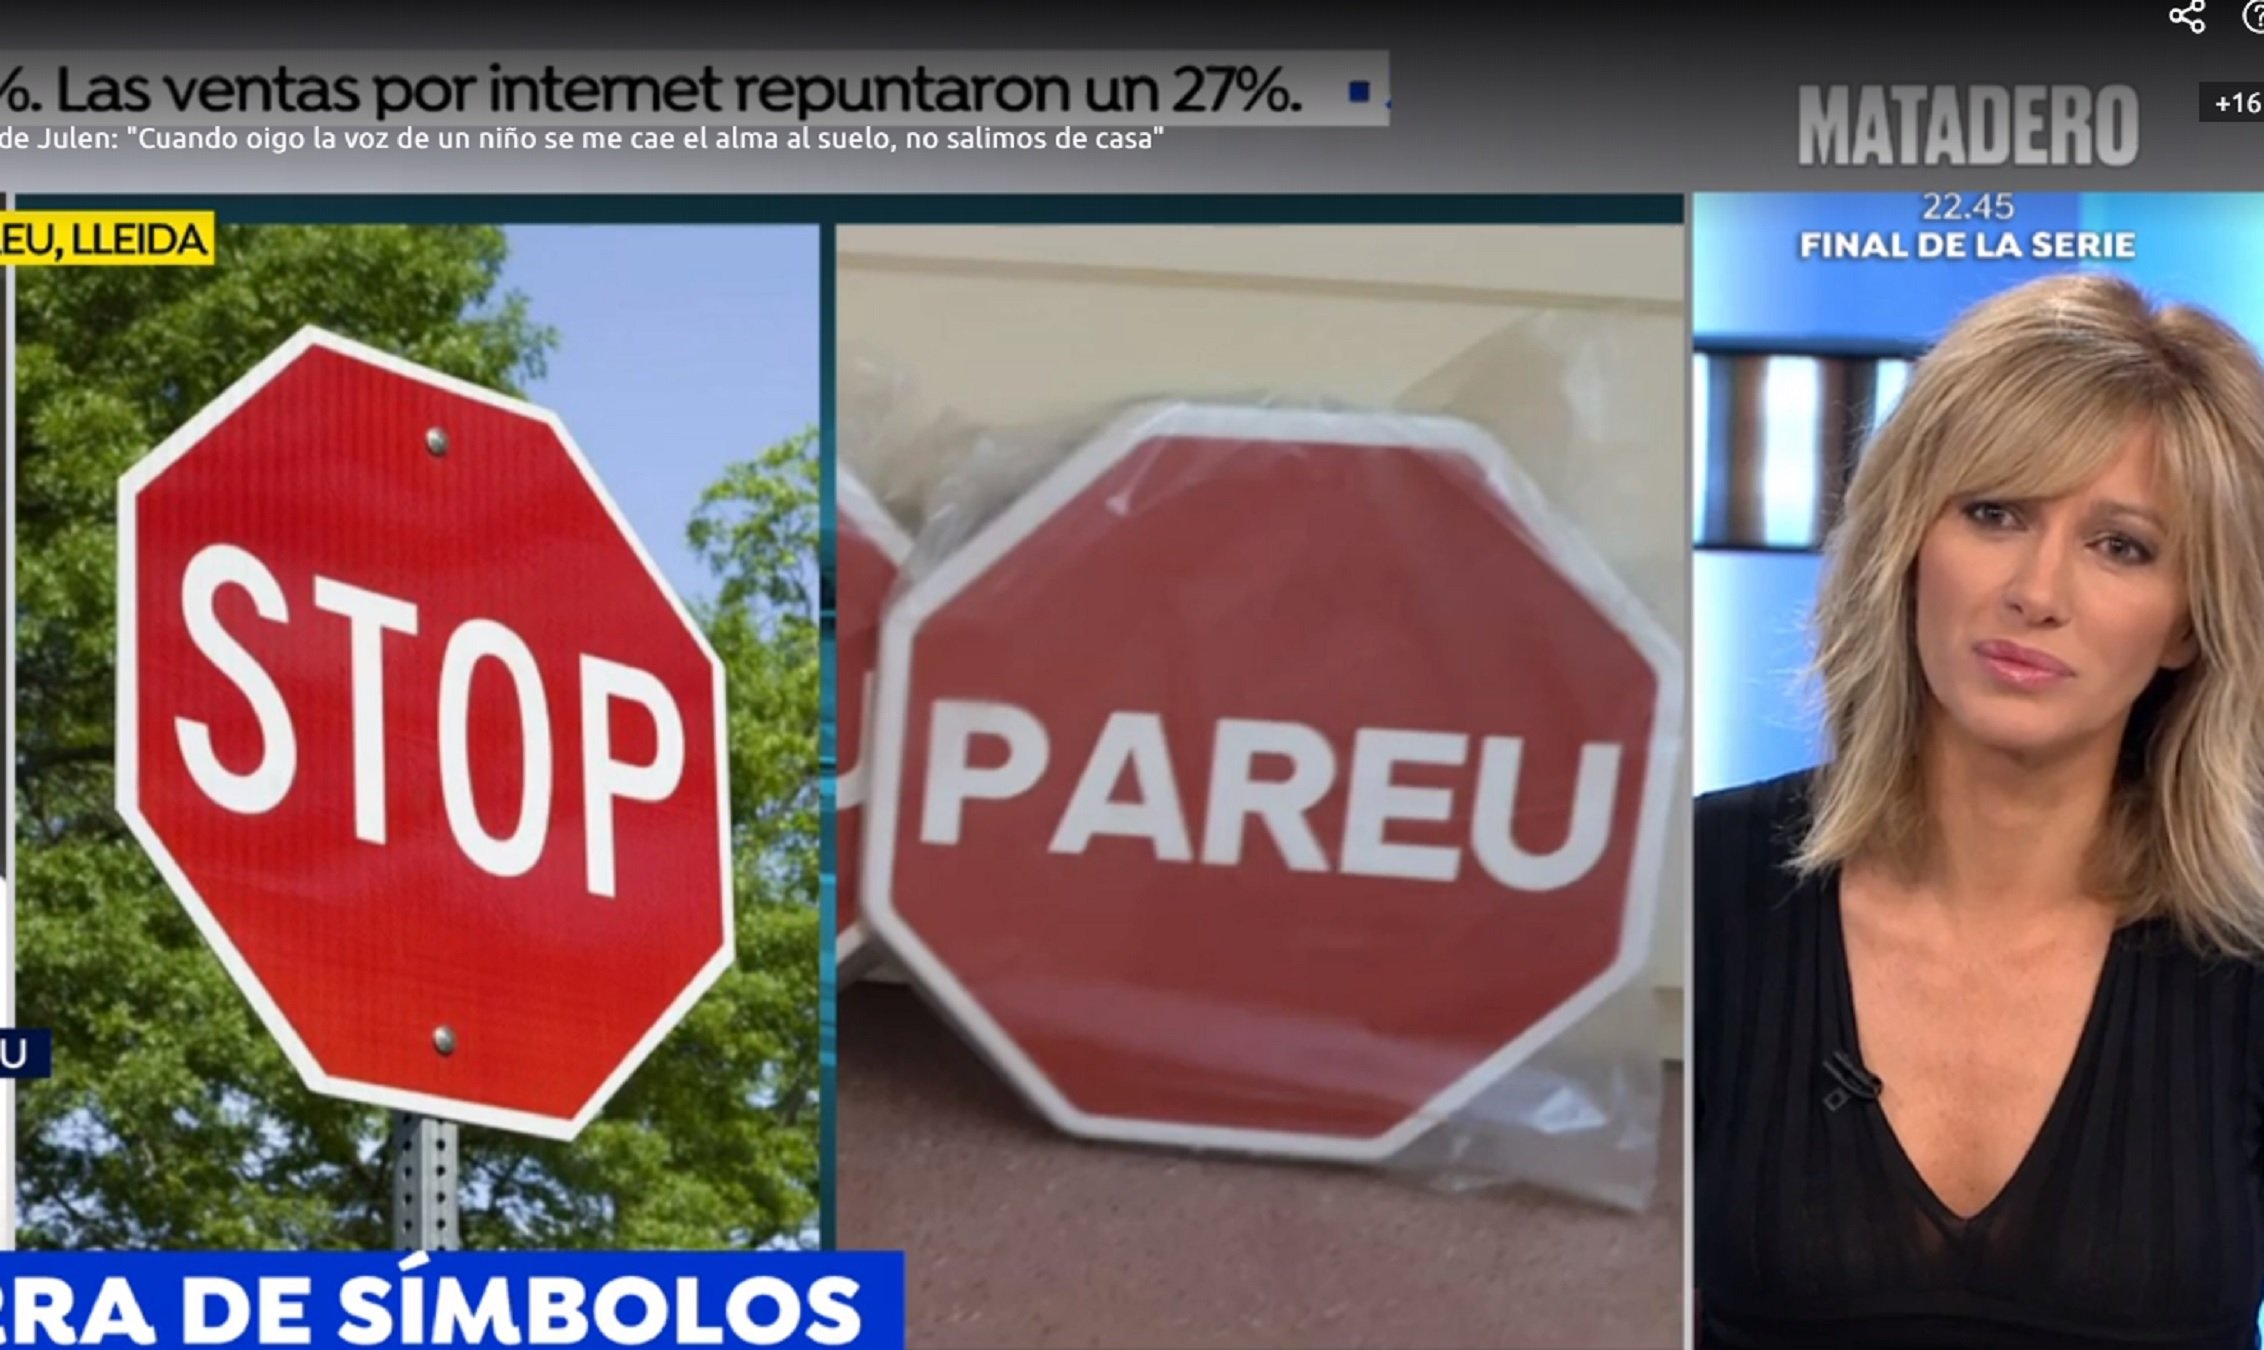 Guerra d'Antena 3 contra un poble lleidatà amb senyals de "Pareu" i no "Stop"